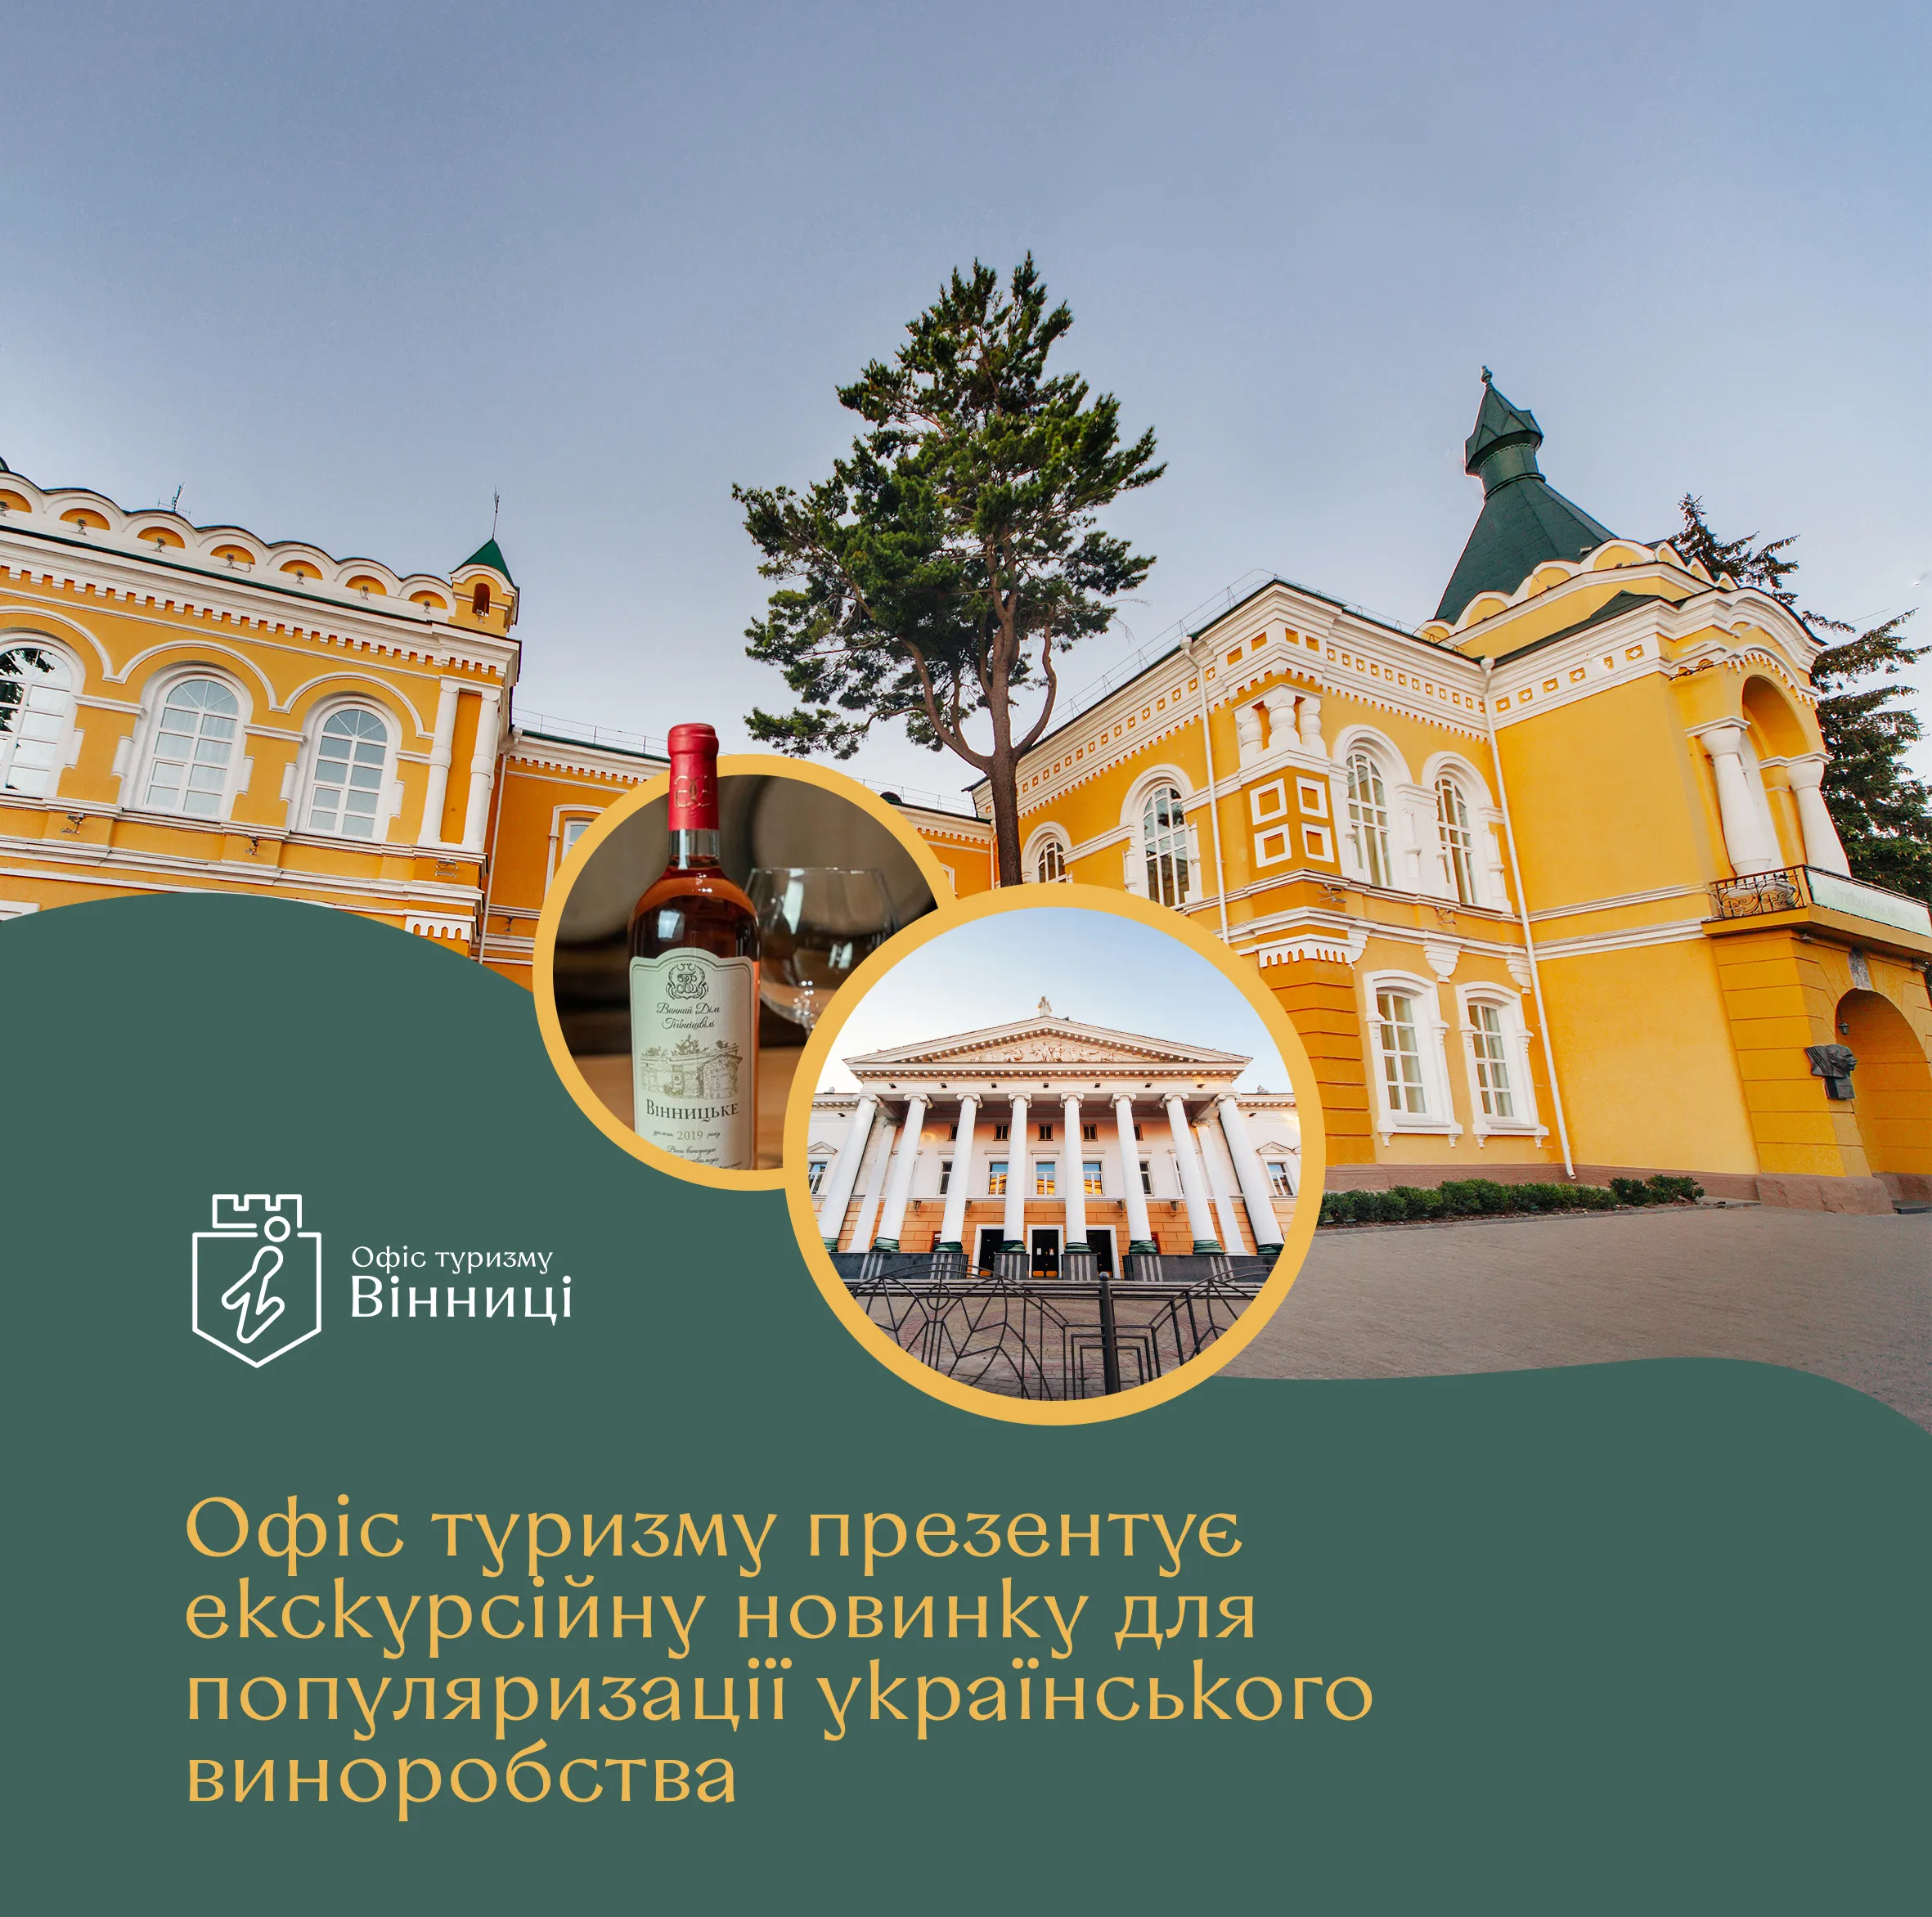 У Вінниці презентують екскурсійну новинку для популяризації українського виноробства